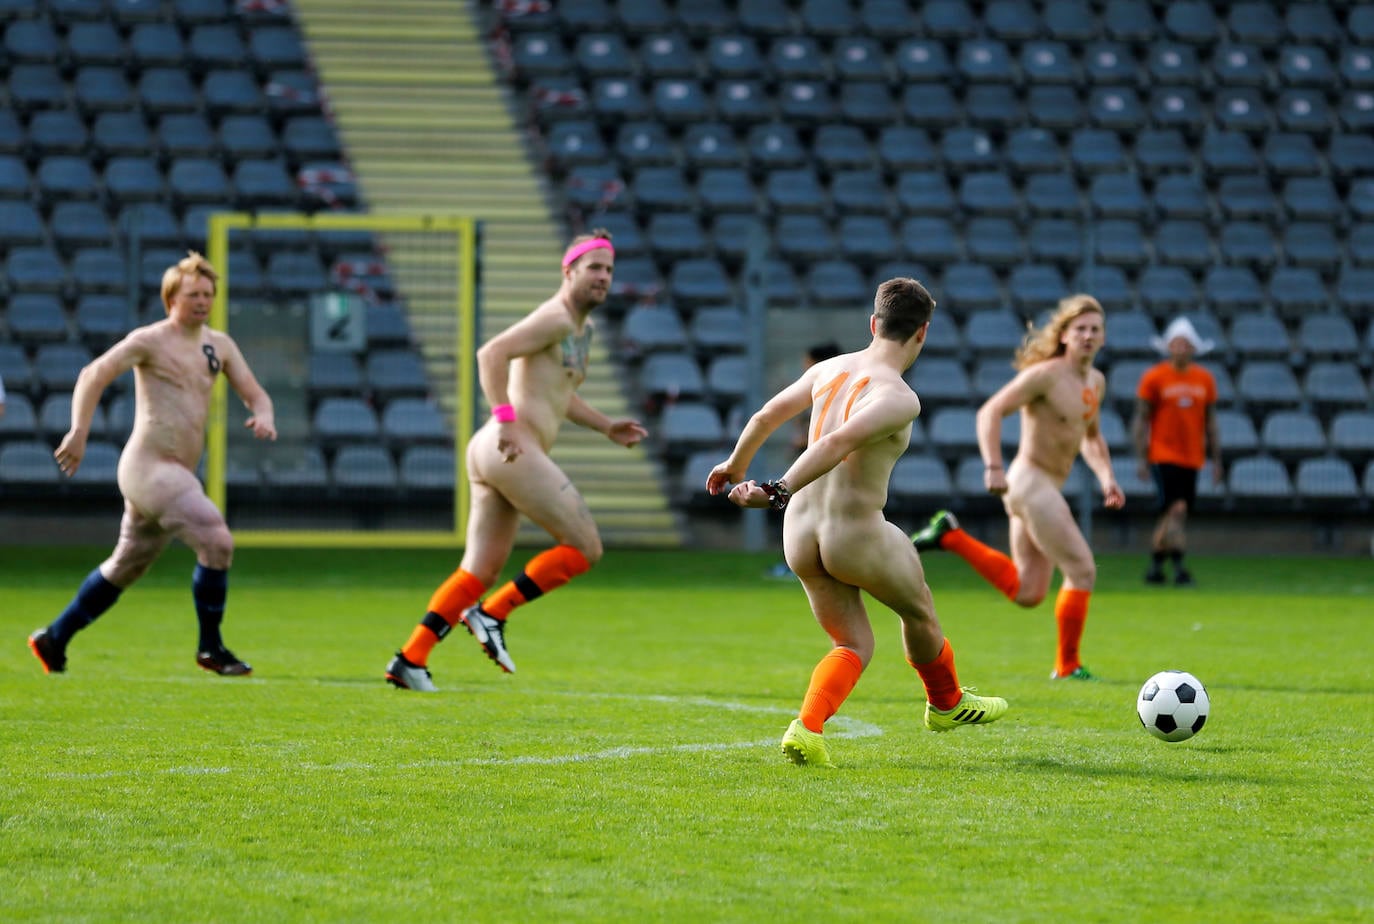 голые мужчины играют в футбол фото 12